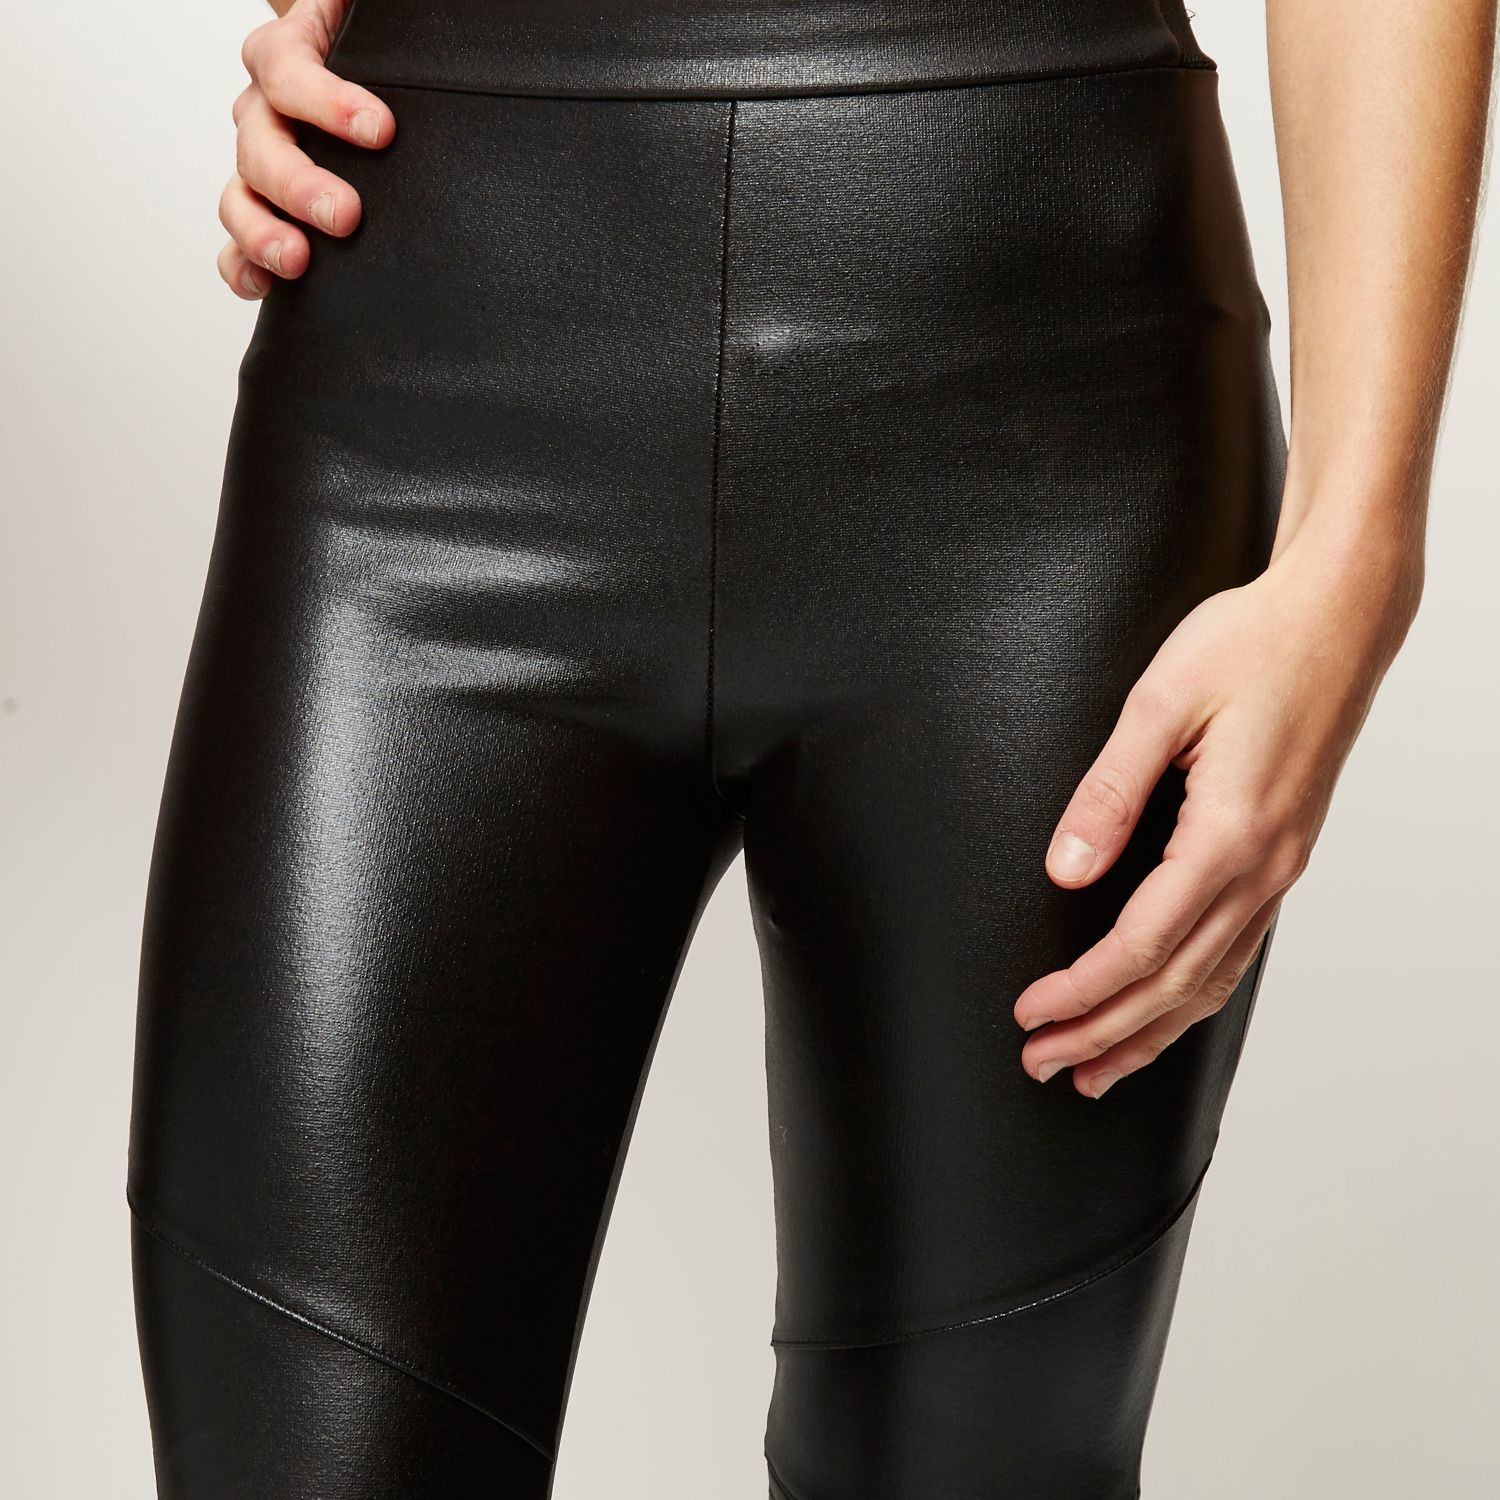 leather leggings biker styles for women